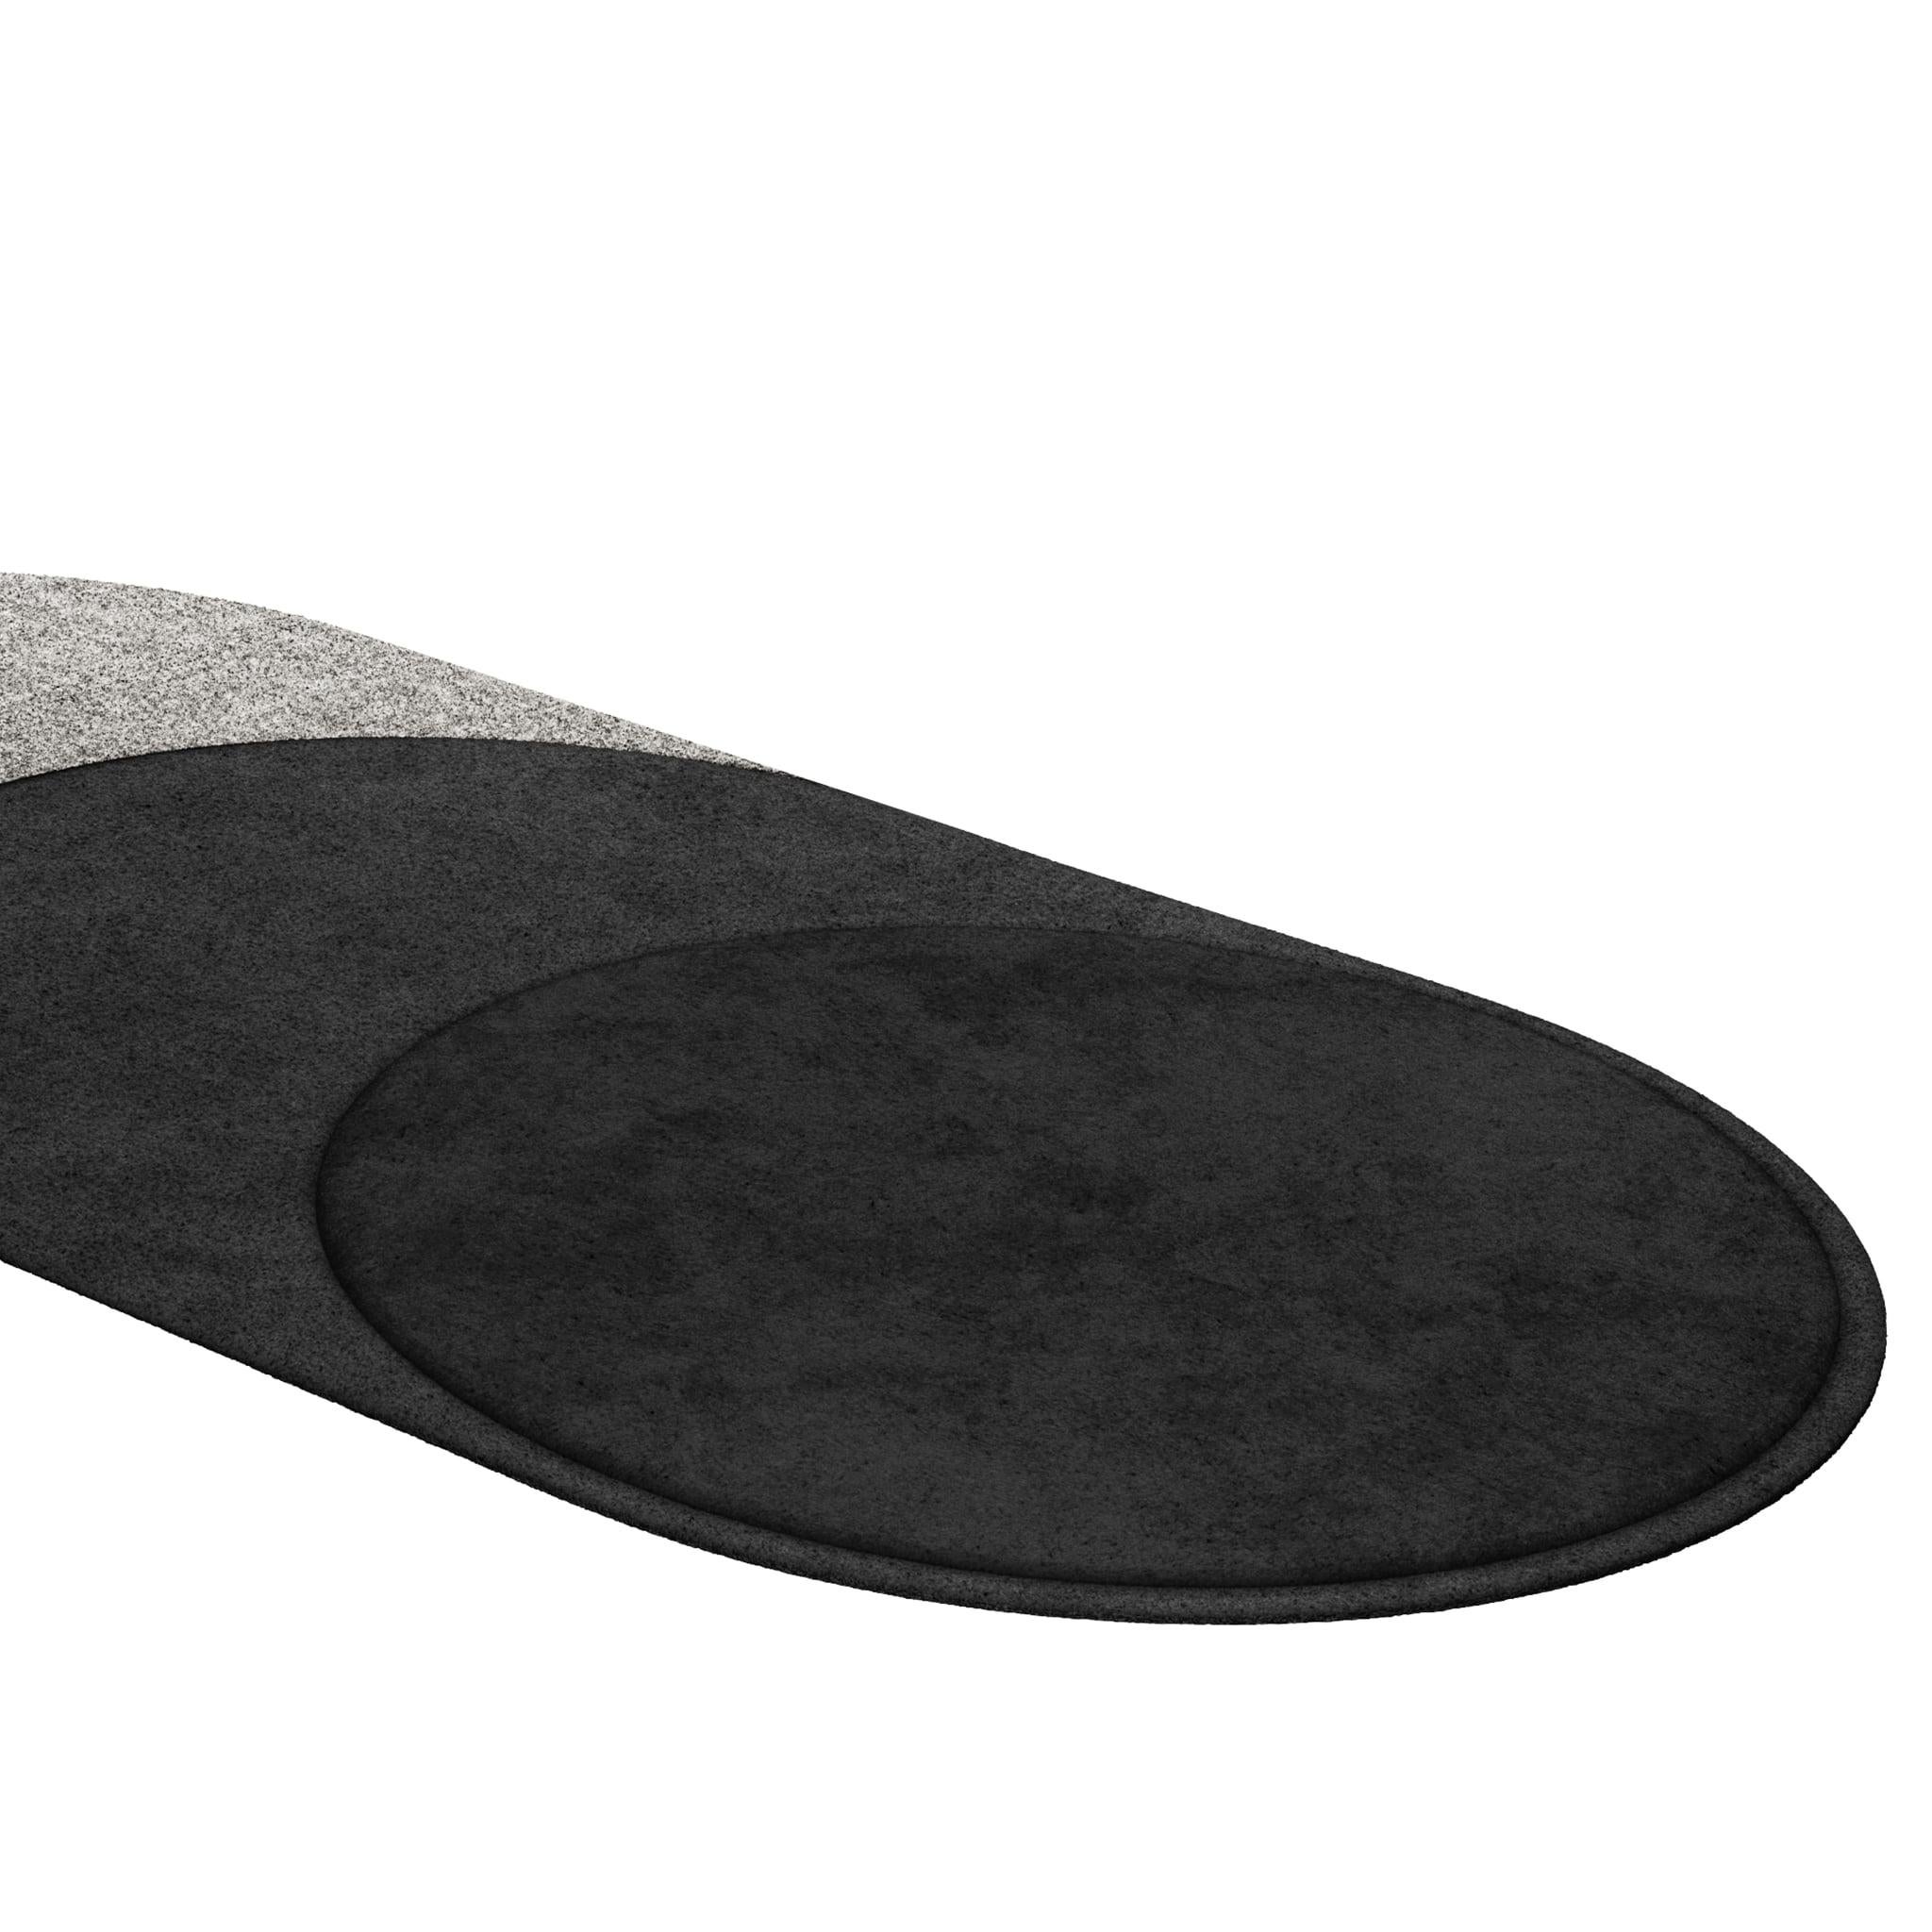 Tapis Retro #012 ist ein Retro-Teppich mit ovaler Form und monochromen Farbtönen. Inspiriert von architektonischen Linien, setzt dieser geometrische Teppich in jedem Wohnbereich ein Zeichen.

Mit einer 3D-Tufting-Technik, die Schnitt- und